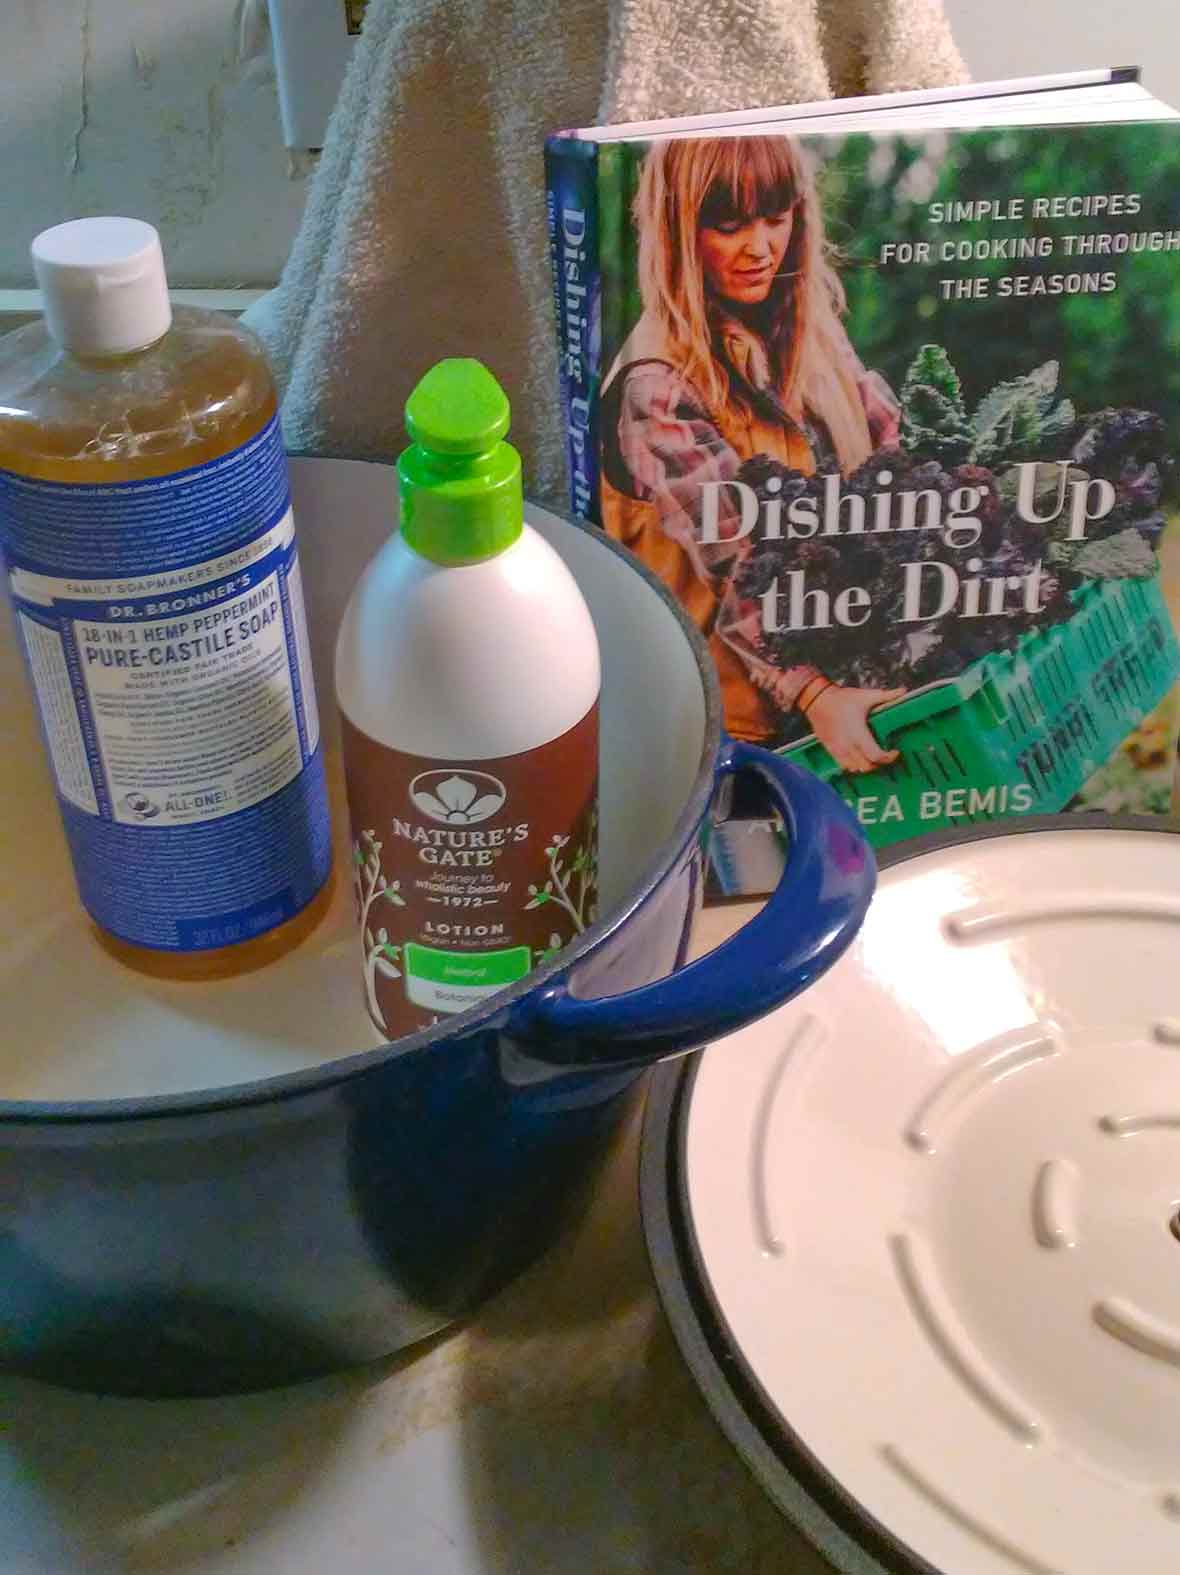 Dishing Up the Dirt Cookbook, blue Le Creuset Pot, dish liquid